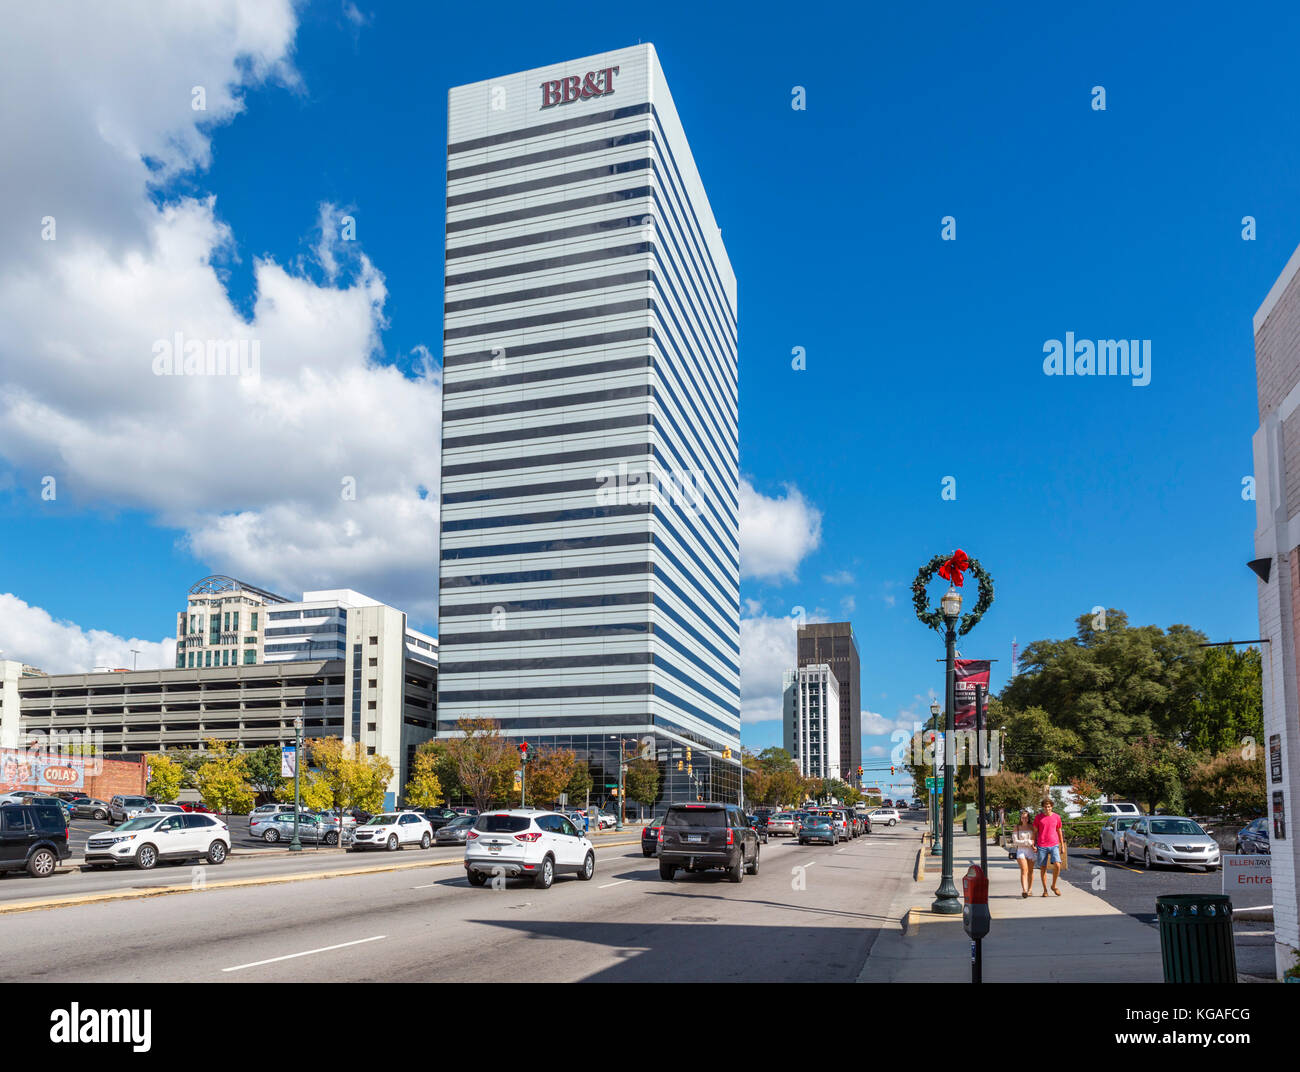 Immeubles de bureaux modernes sur Gervais Street dans le centre-ville de Columbia, Caroline du Sud, USA Banque D'Images